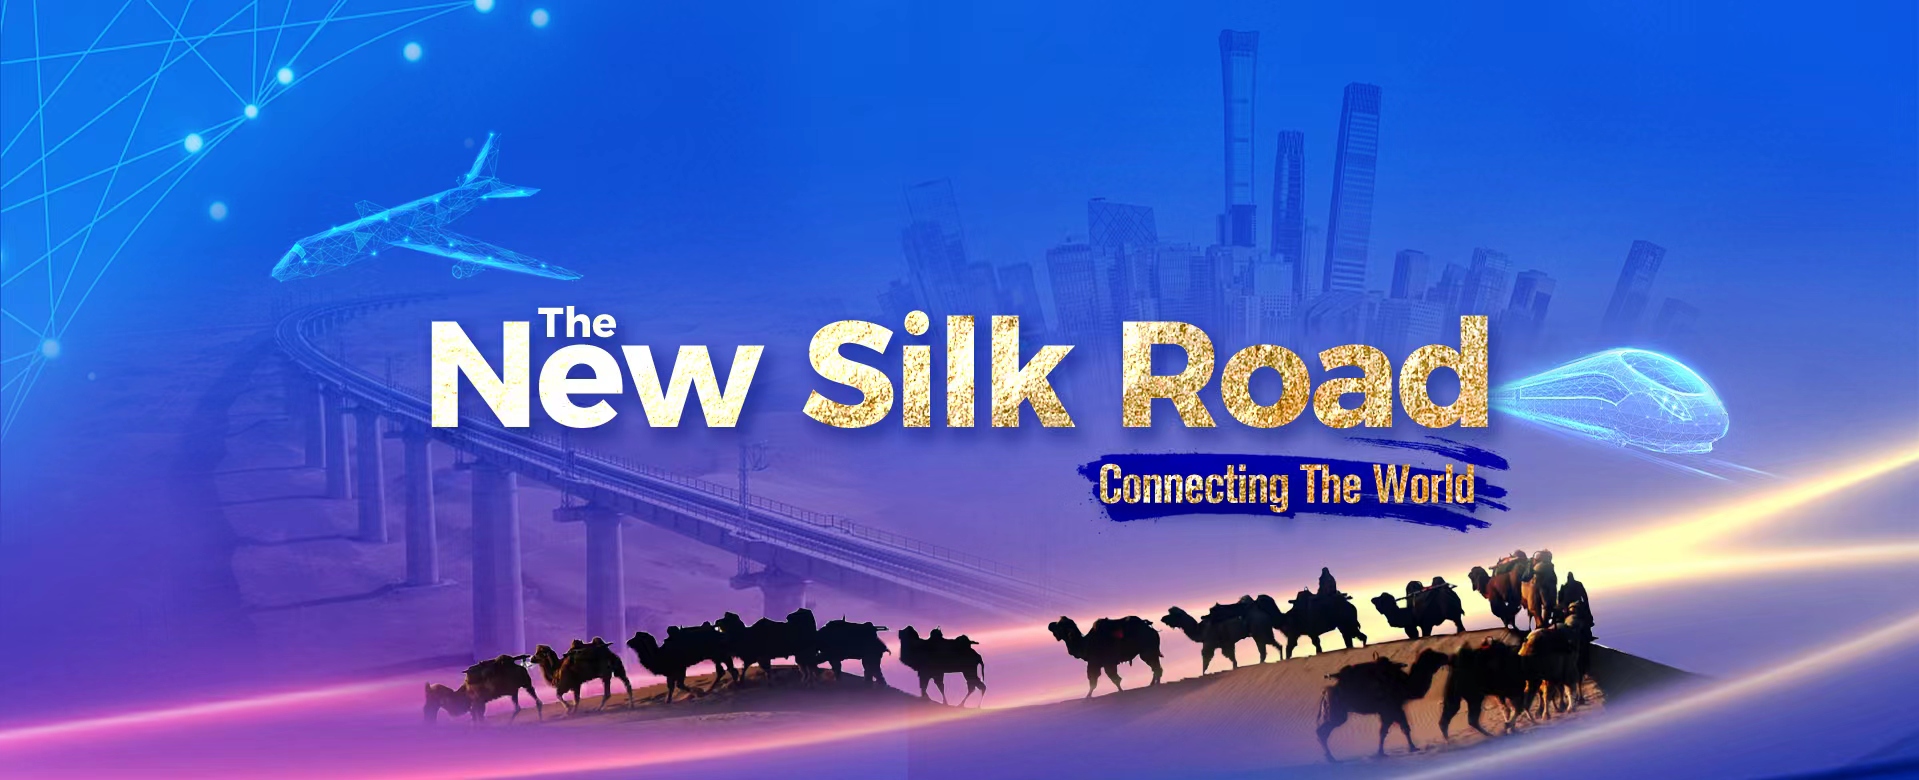 new silk road1